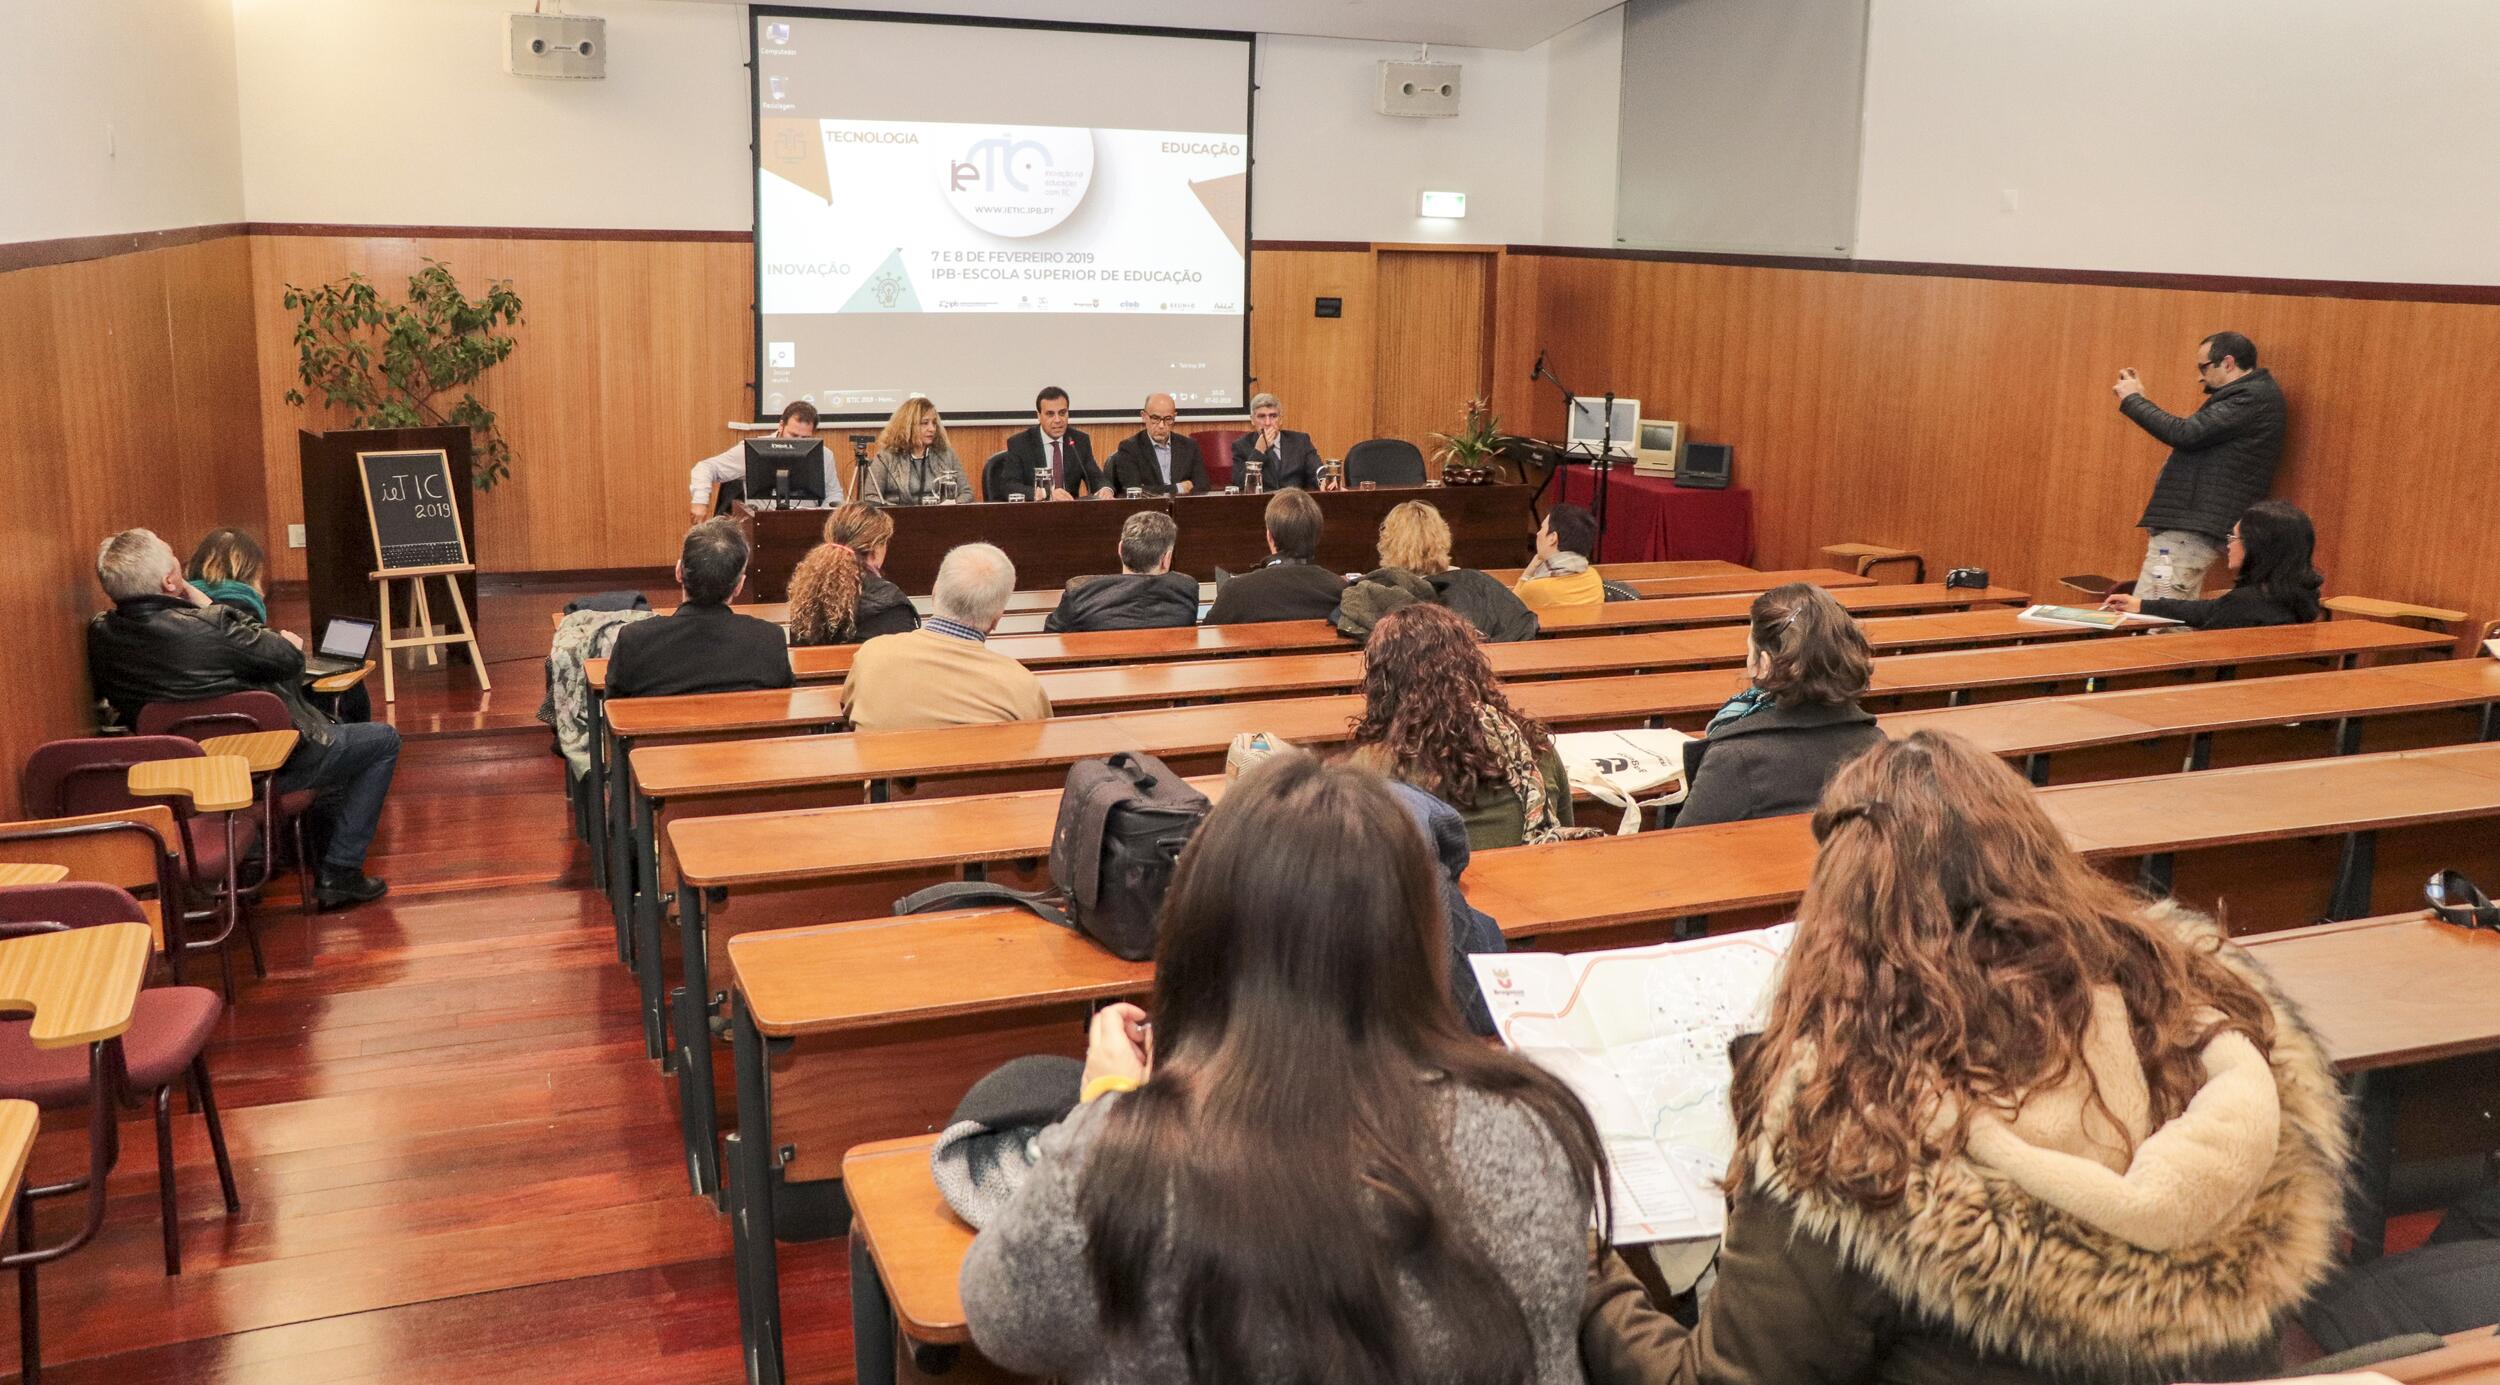 Bragança como espaço debate ibérico da inovação na educação com TIC